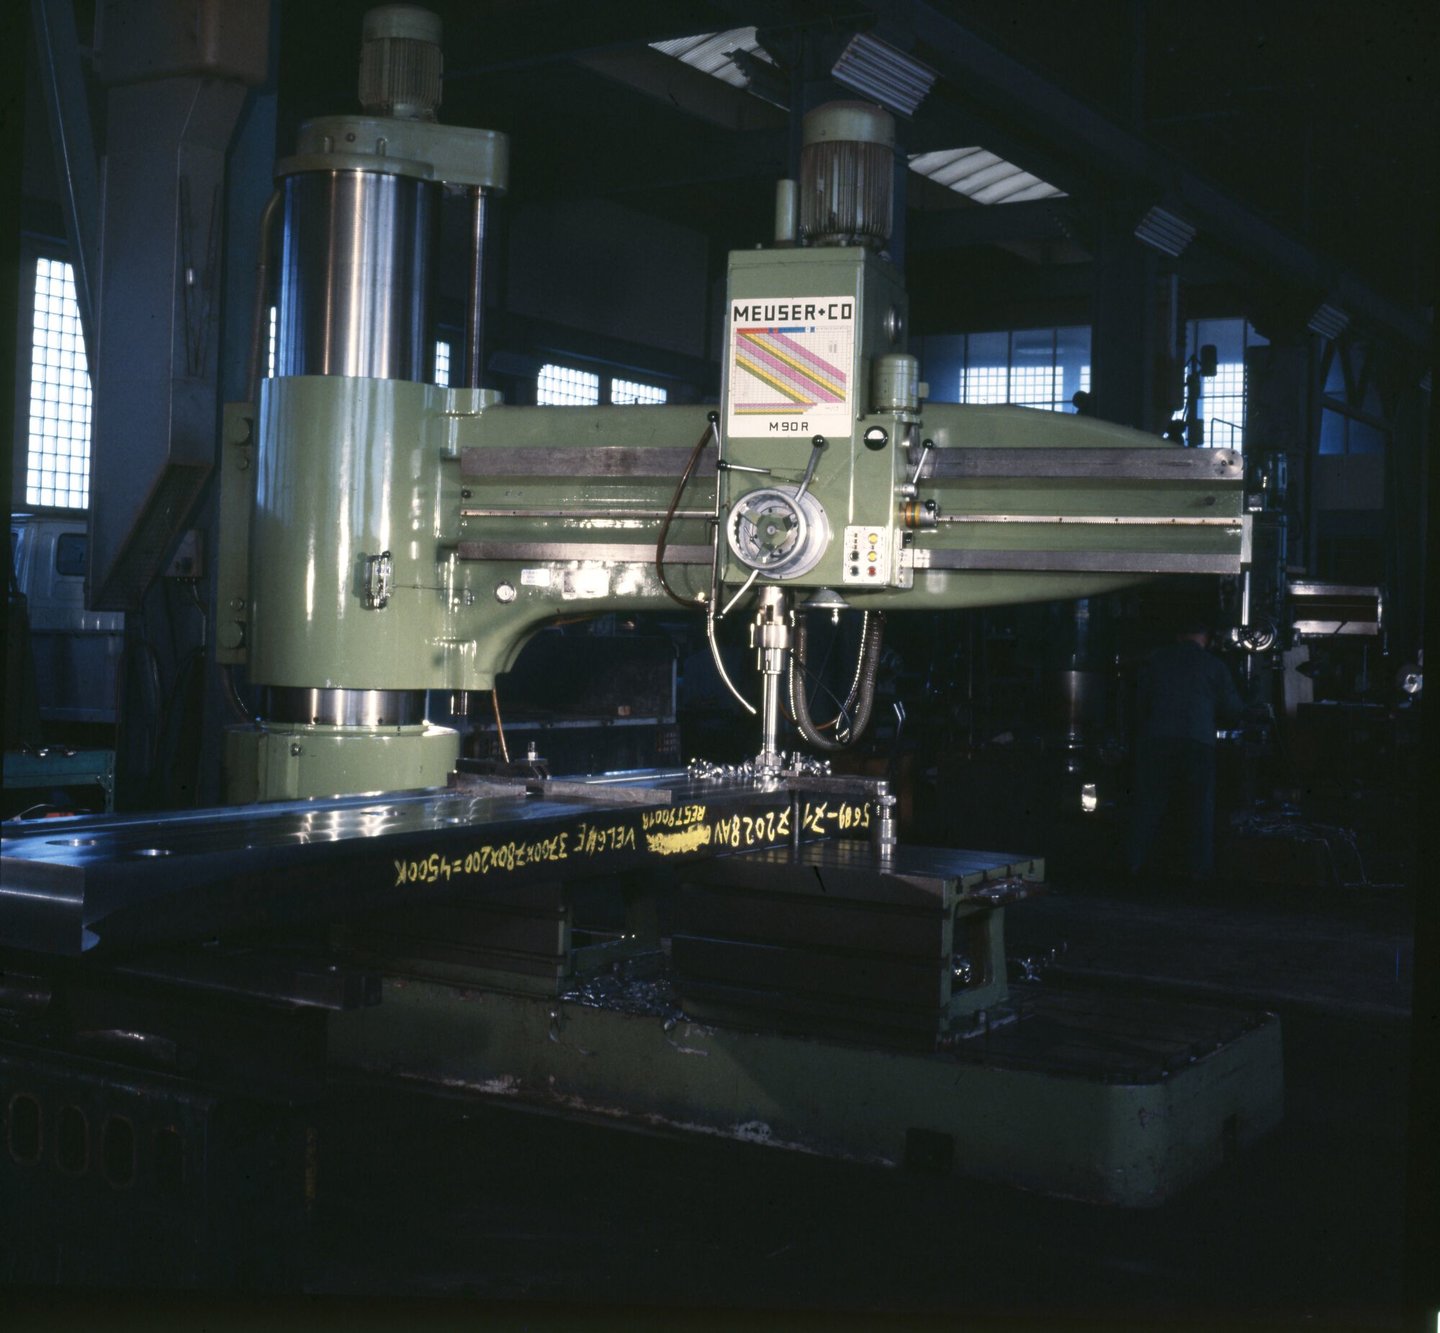 Radiaalboormachine in machinewerkplaats van Gentse Metaalwerken in Gent